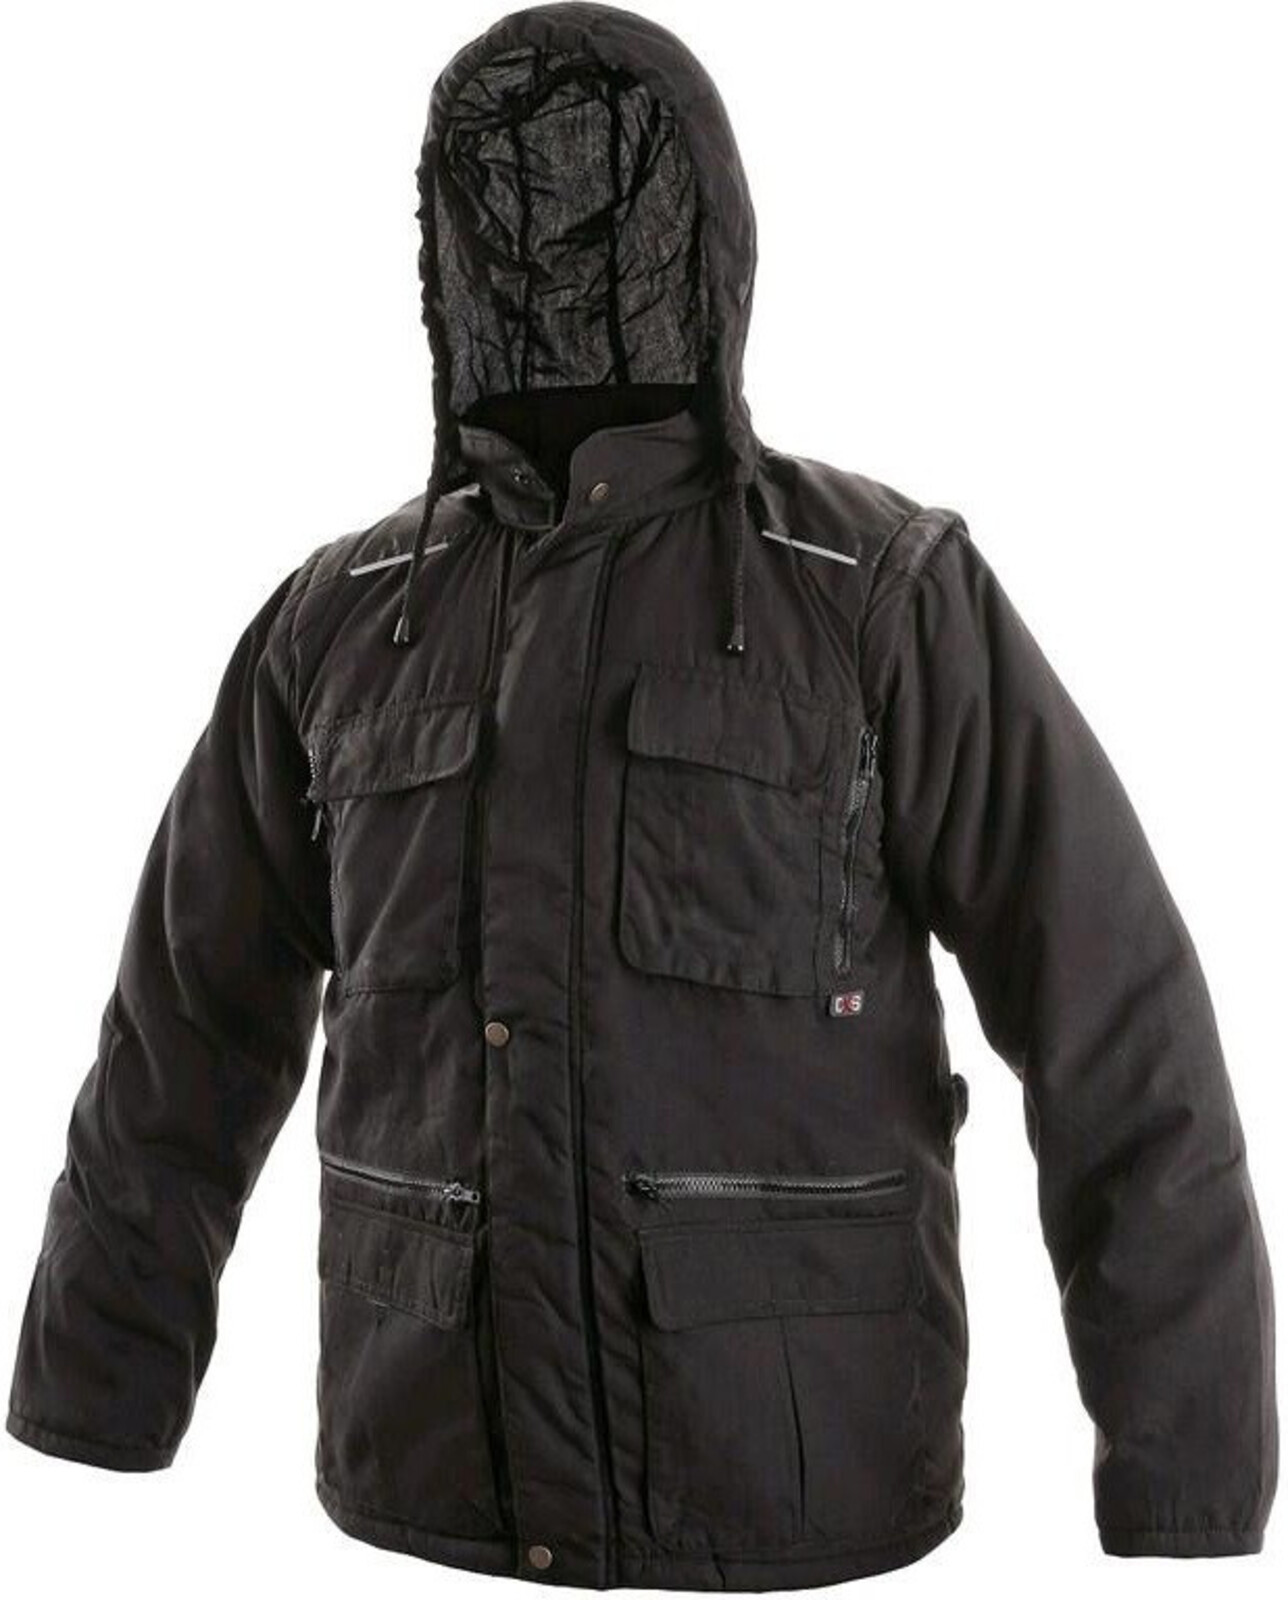 Pánska zimná bunda CXS Georgia 2v1 - veľkosť: XXL, farba: čierna